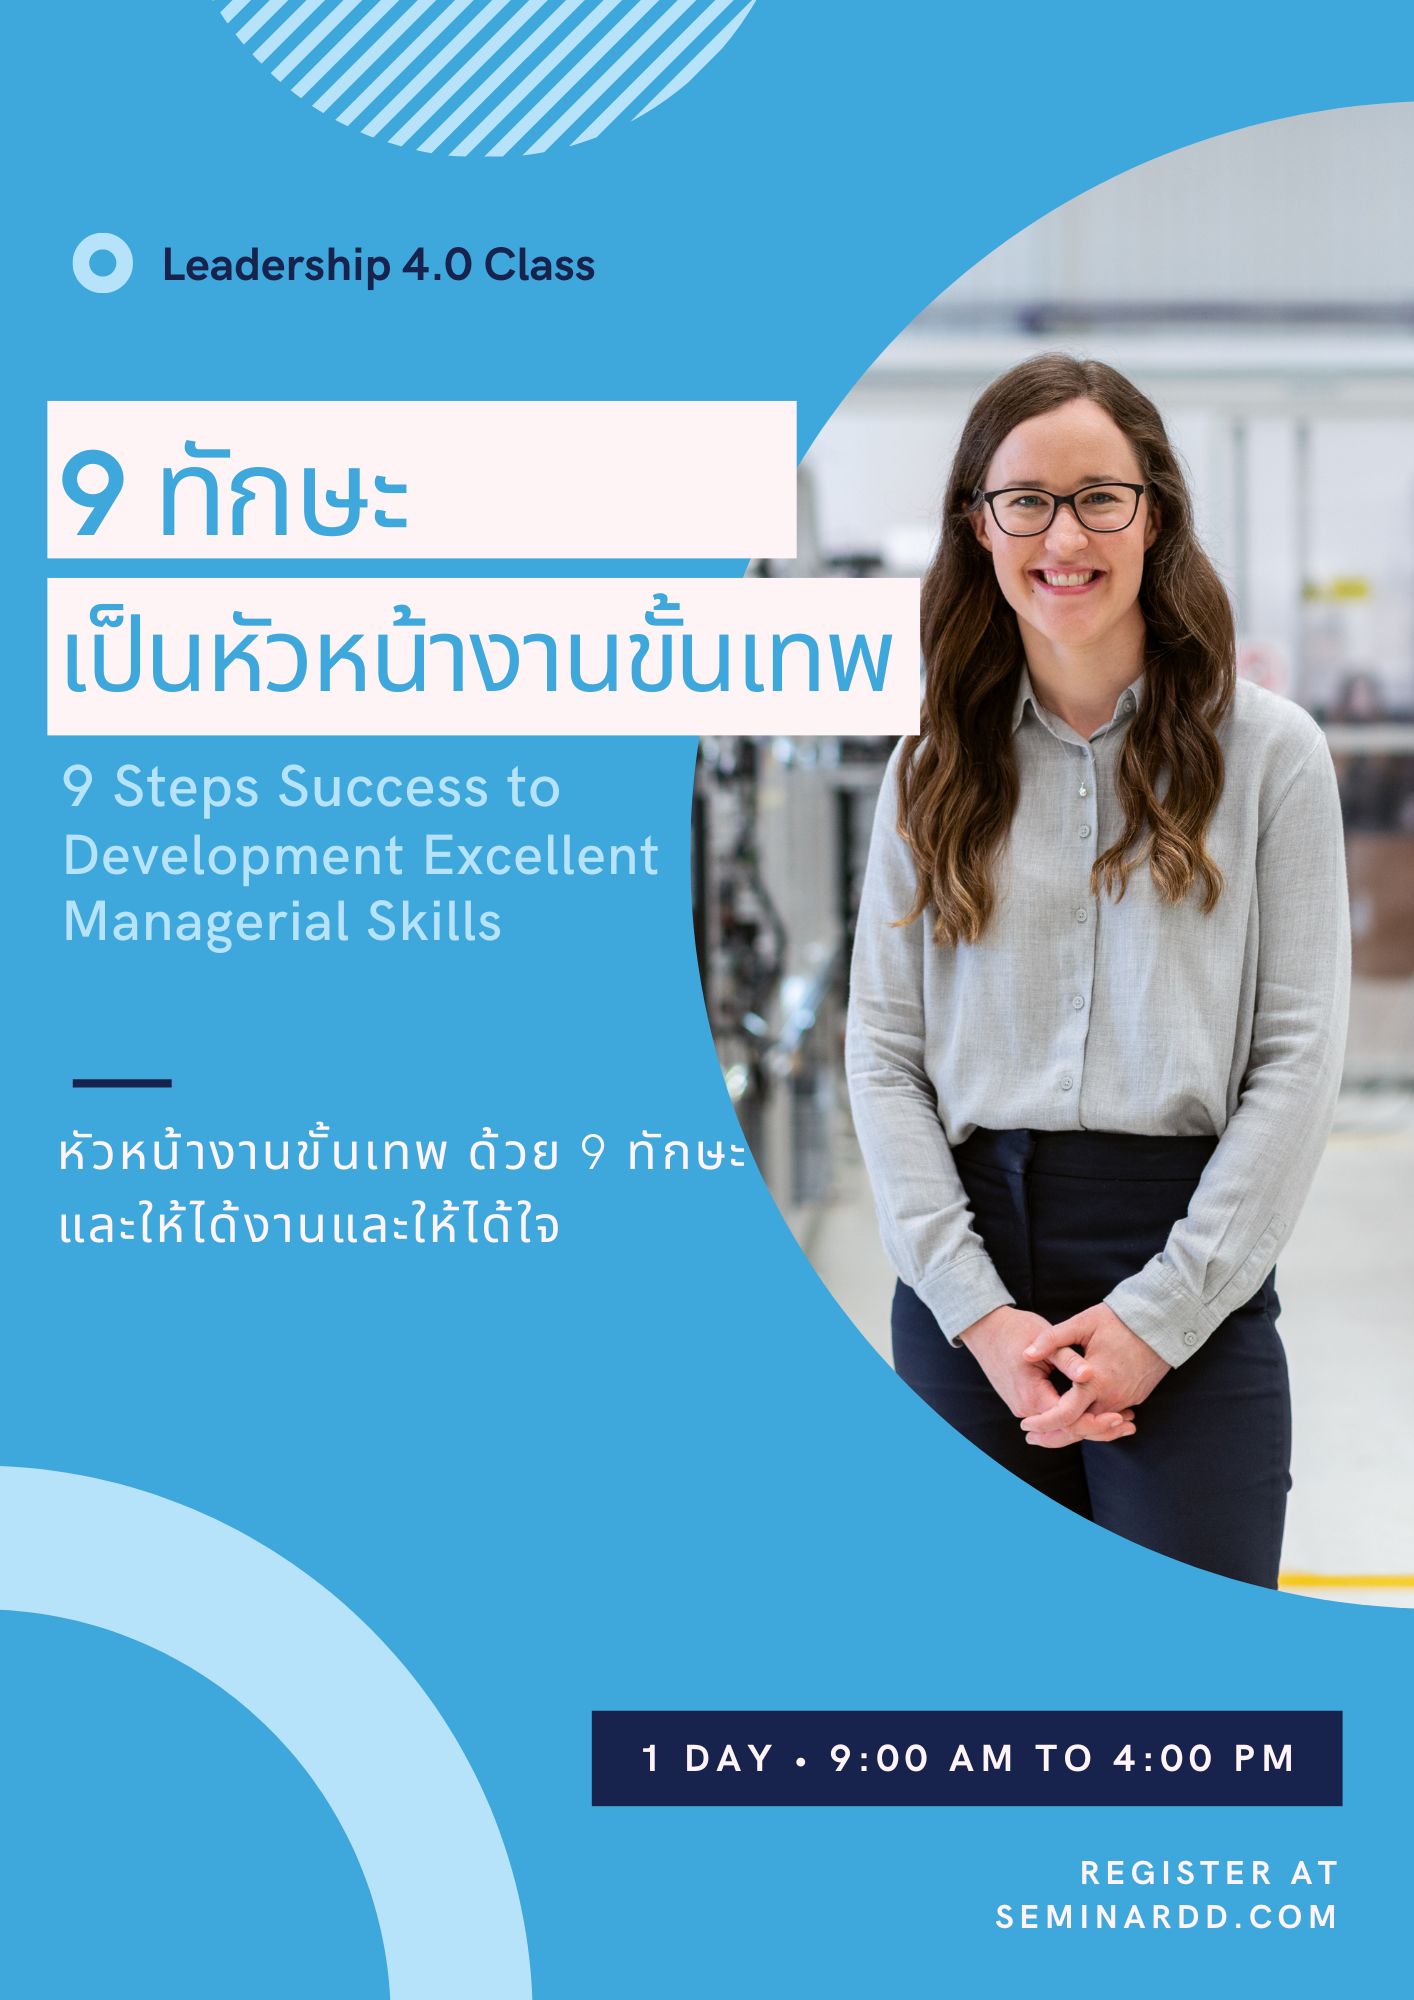 หลักสูตรอบรม หลักสูตร 9 ทักษะความสำเร็จเพื่อยกระดับการเป็นหัวหน้างานขั้นเทพ (9 Steps Success to Development Excellent Managerial Skills)